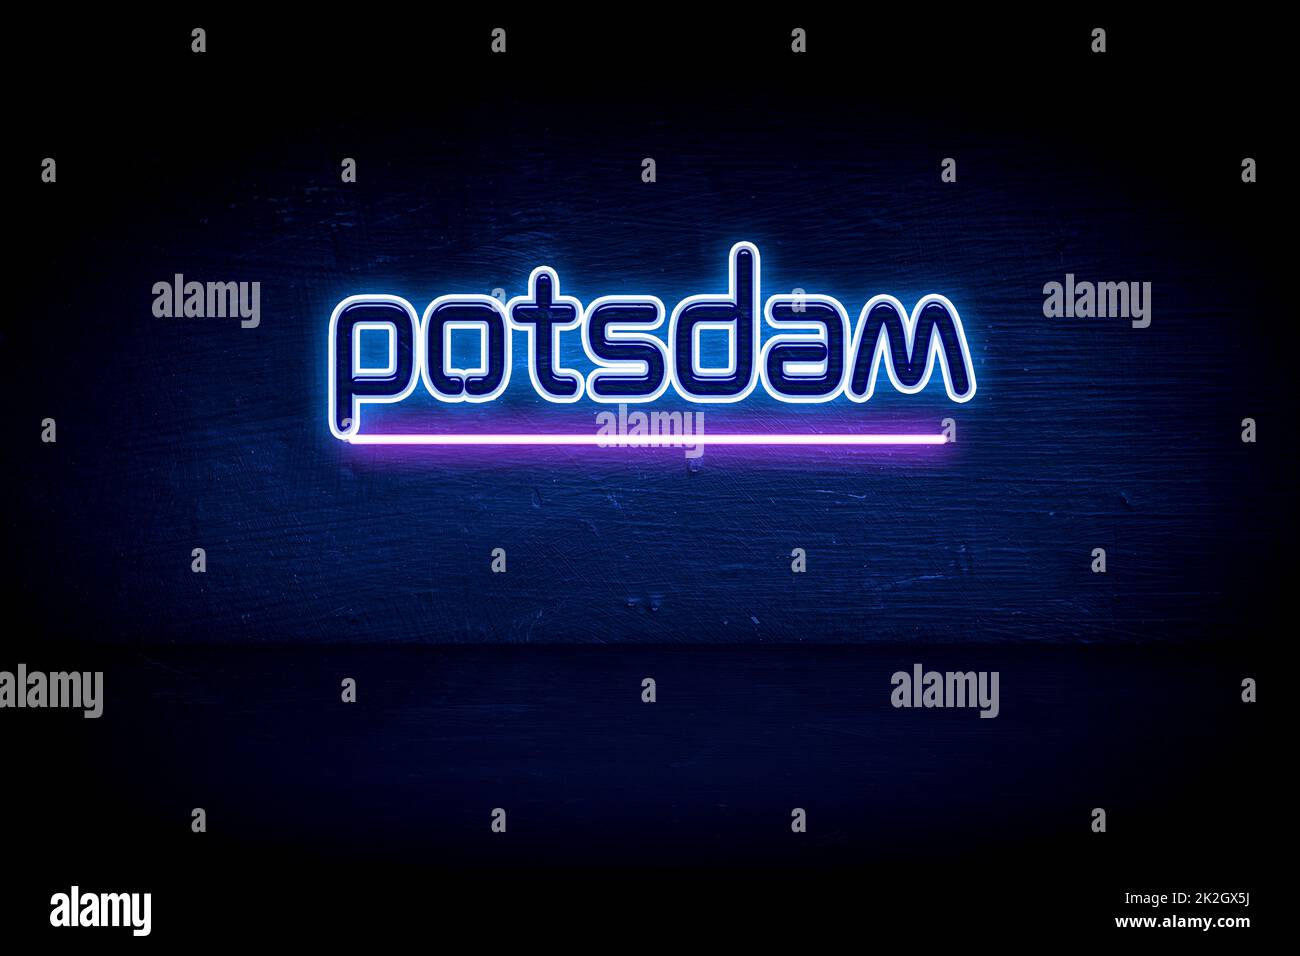 Potsdam - panneau d'annonce au néon bleu Banque D'Images